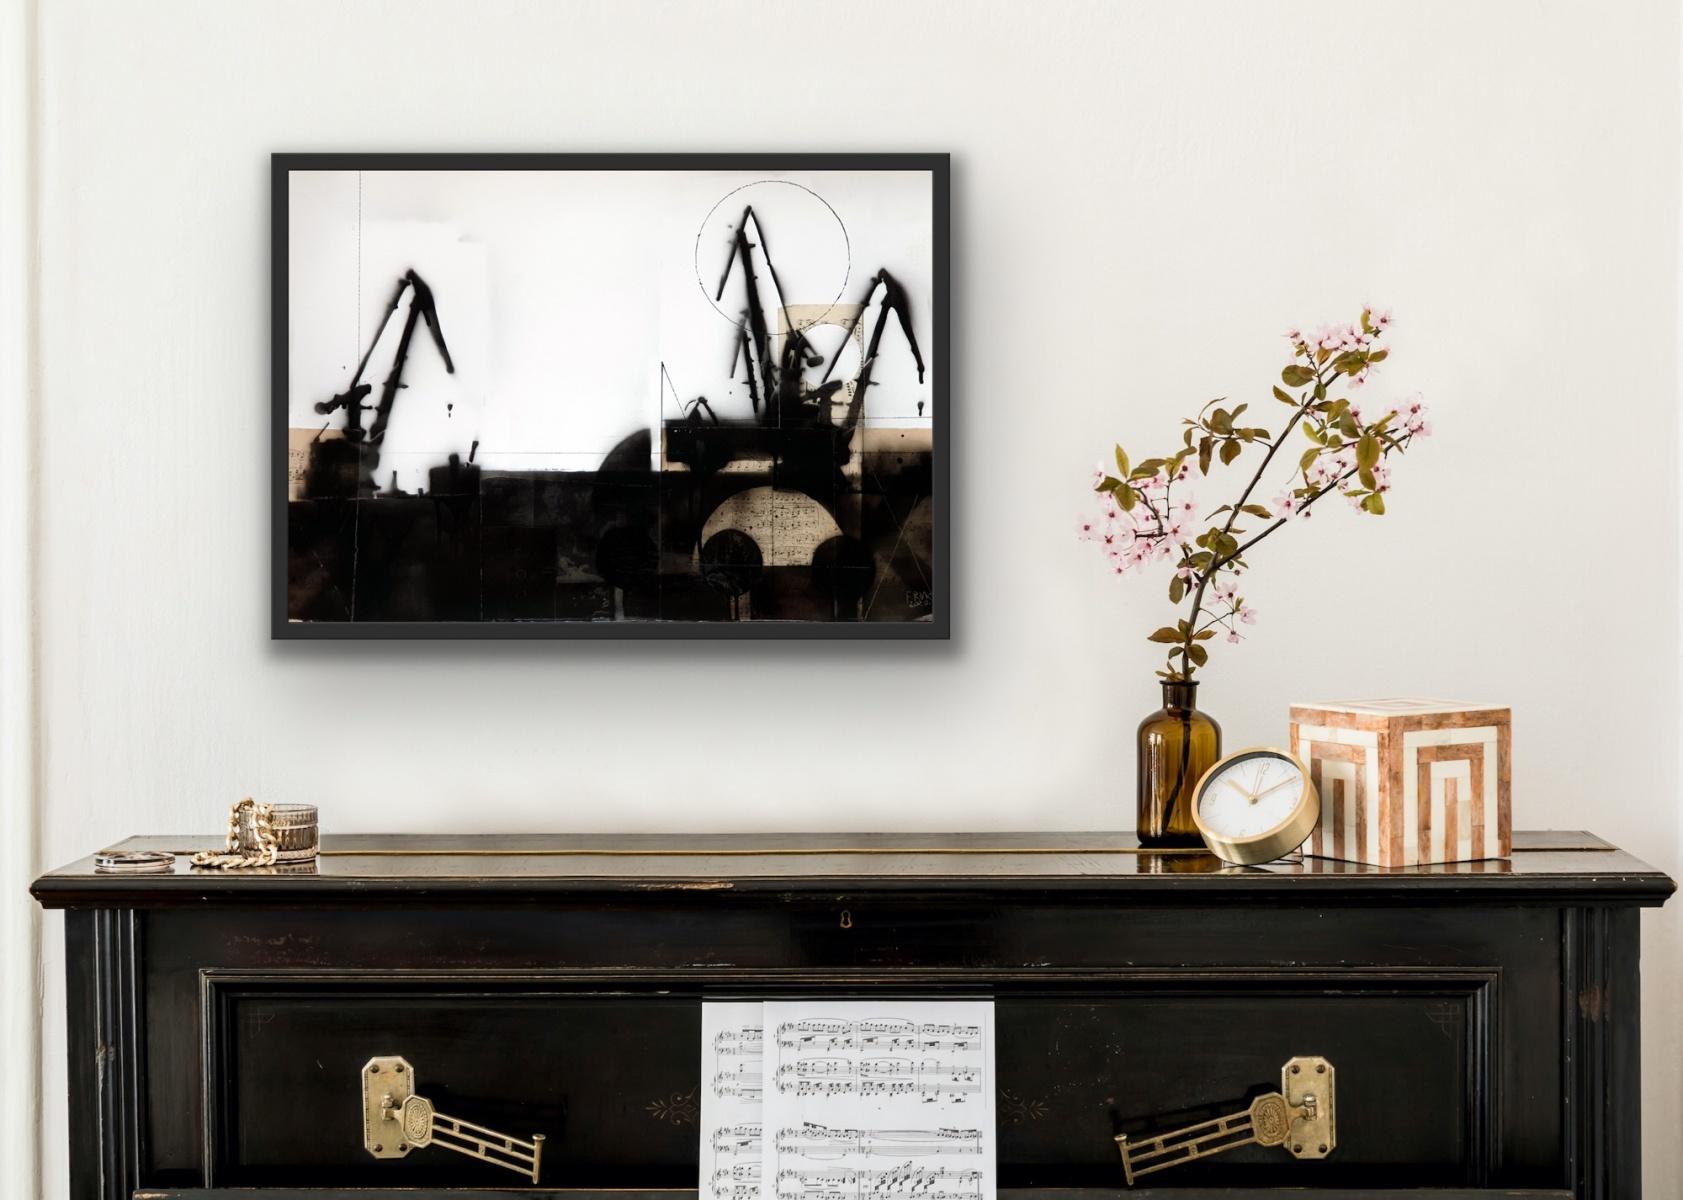 Cranes 5 - Schwarz-Weiß-Gemälde, Mischtechnik, Collage, Polnische Kunst (Abstrakt), Painting, von Lukasz Fruczek